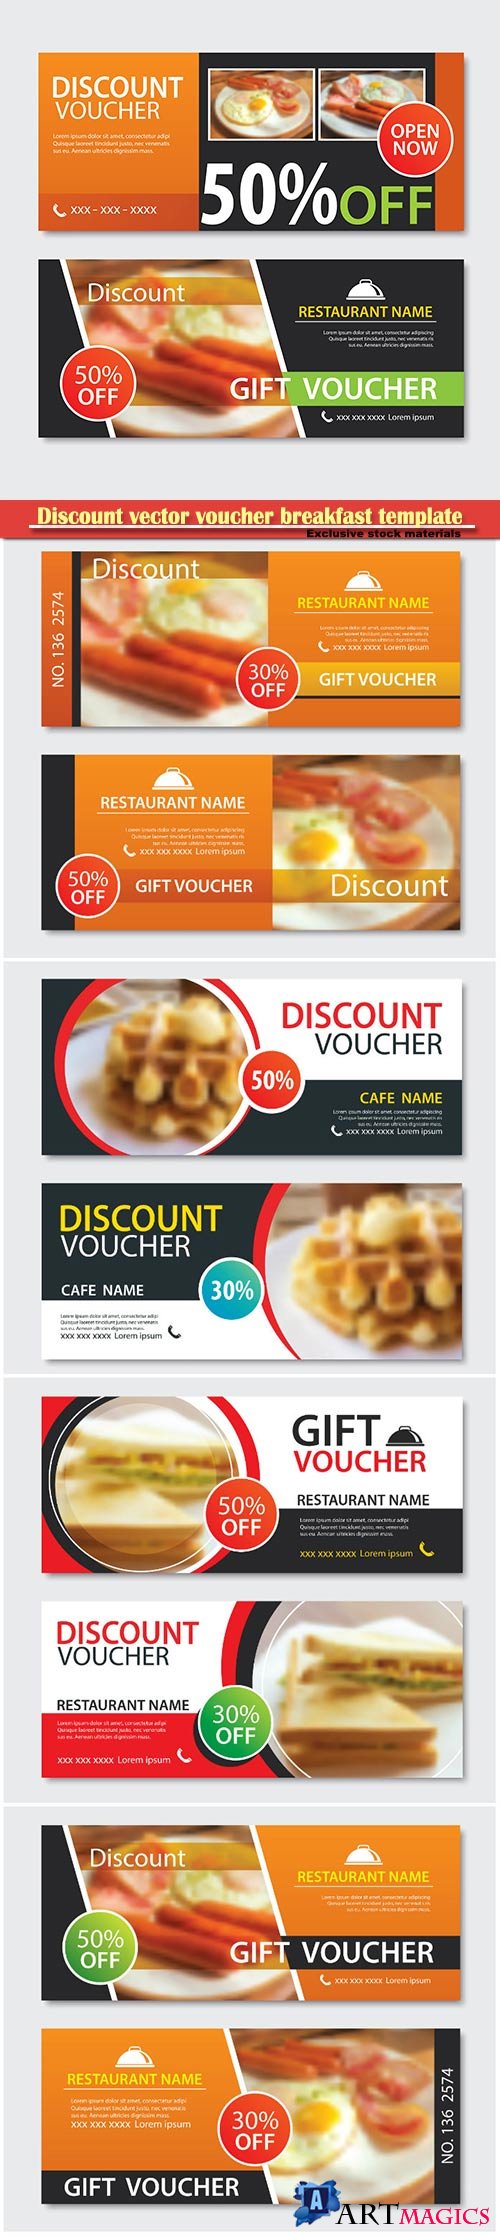 Discount vector voucher breakfast template design